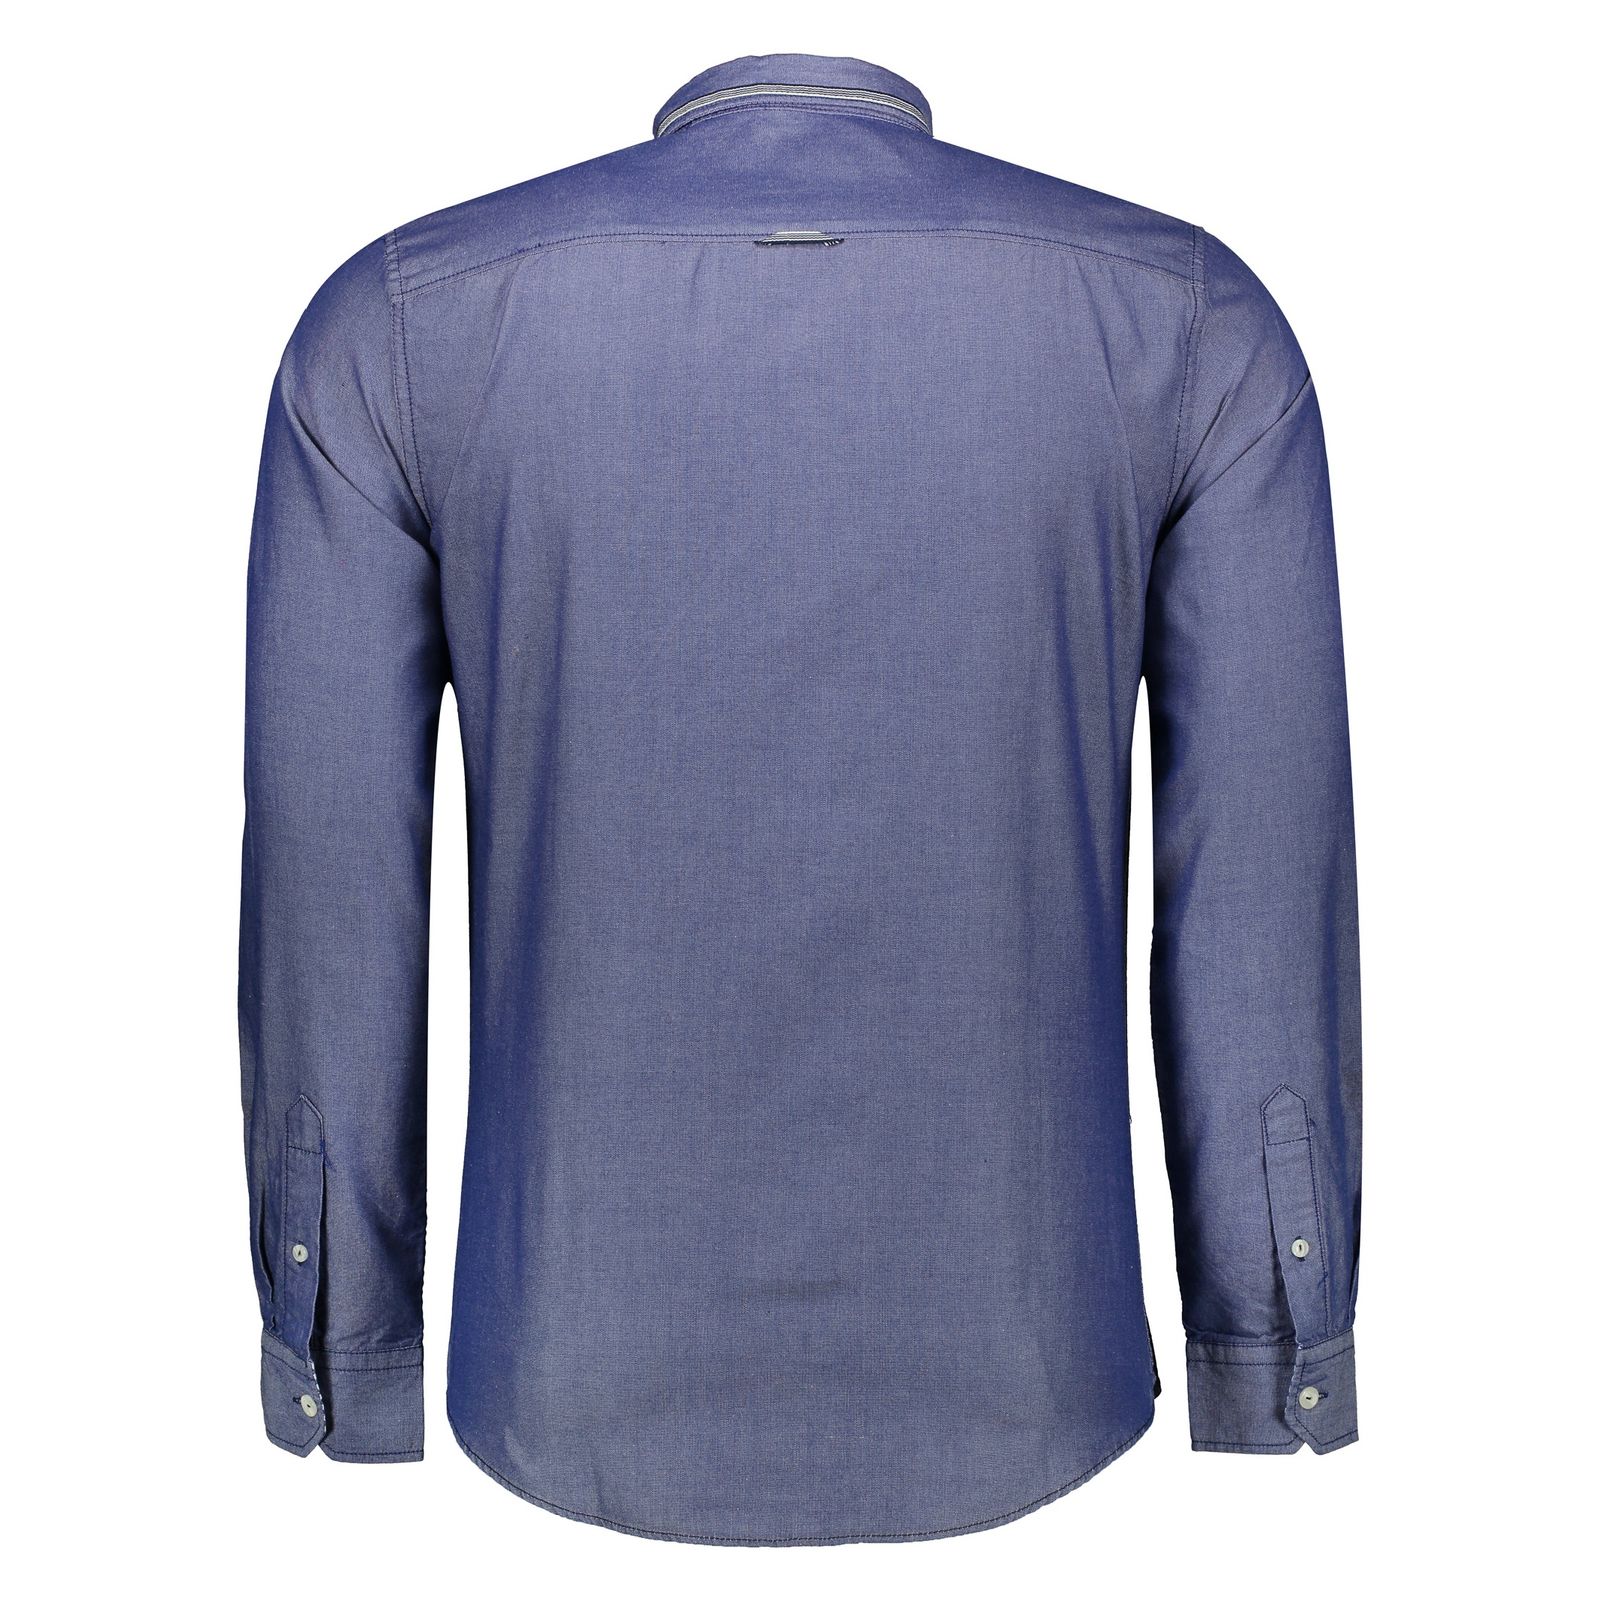 پیراهن مردانه اسپرینگ فیلد مدل 0275549-12 - آبی - 4